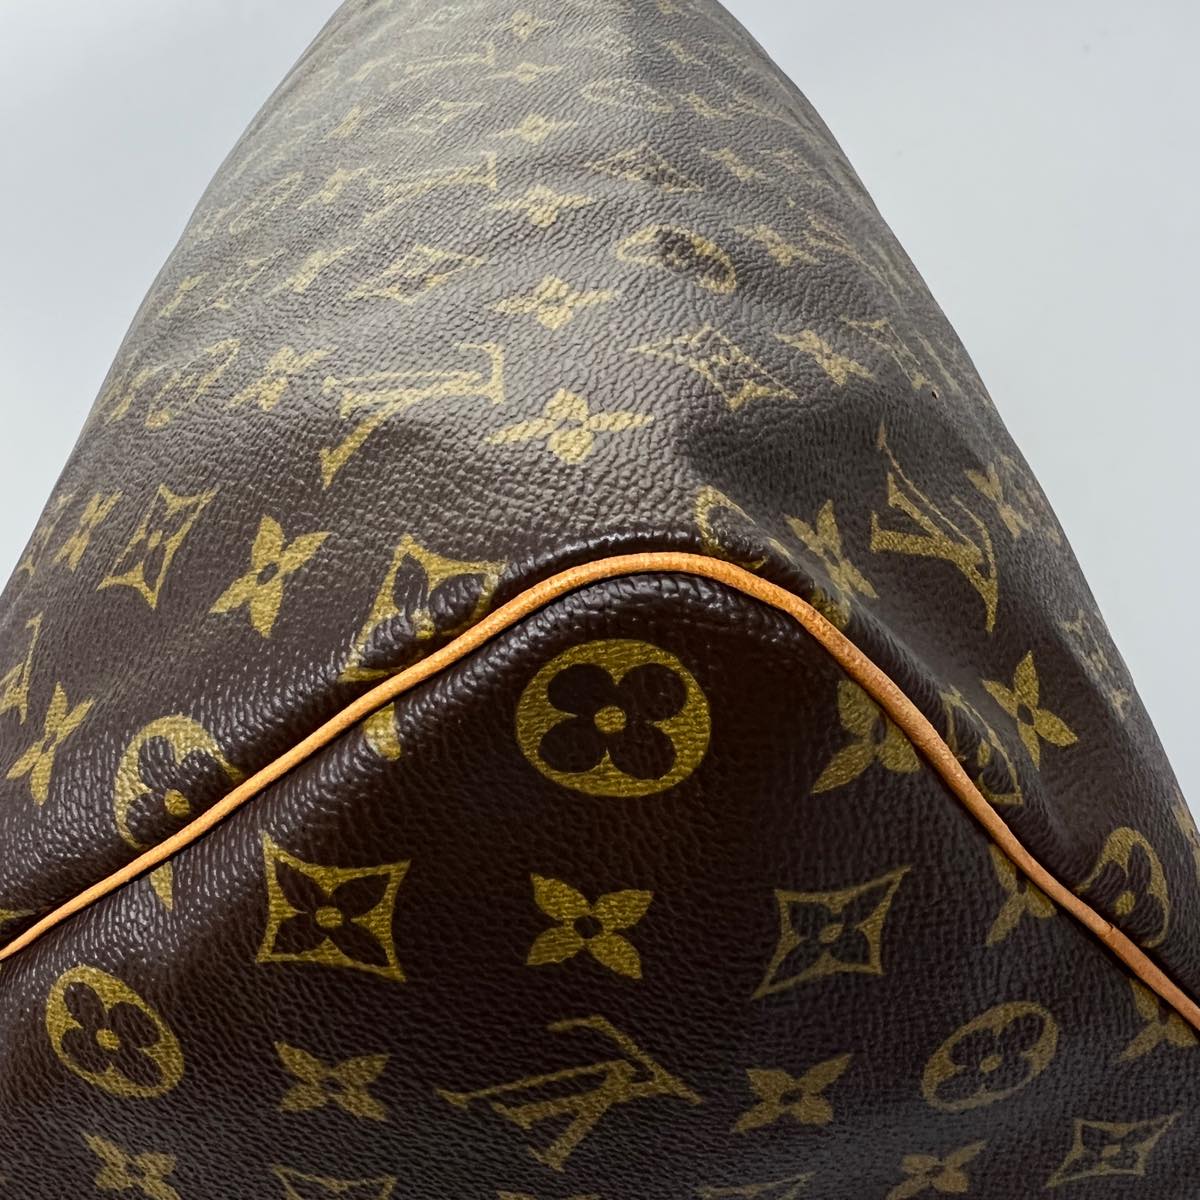 €1M Louis Vuitton “Millionaire Speedy 40” bag composed of crocodile le